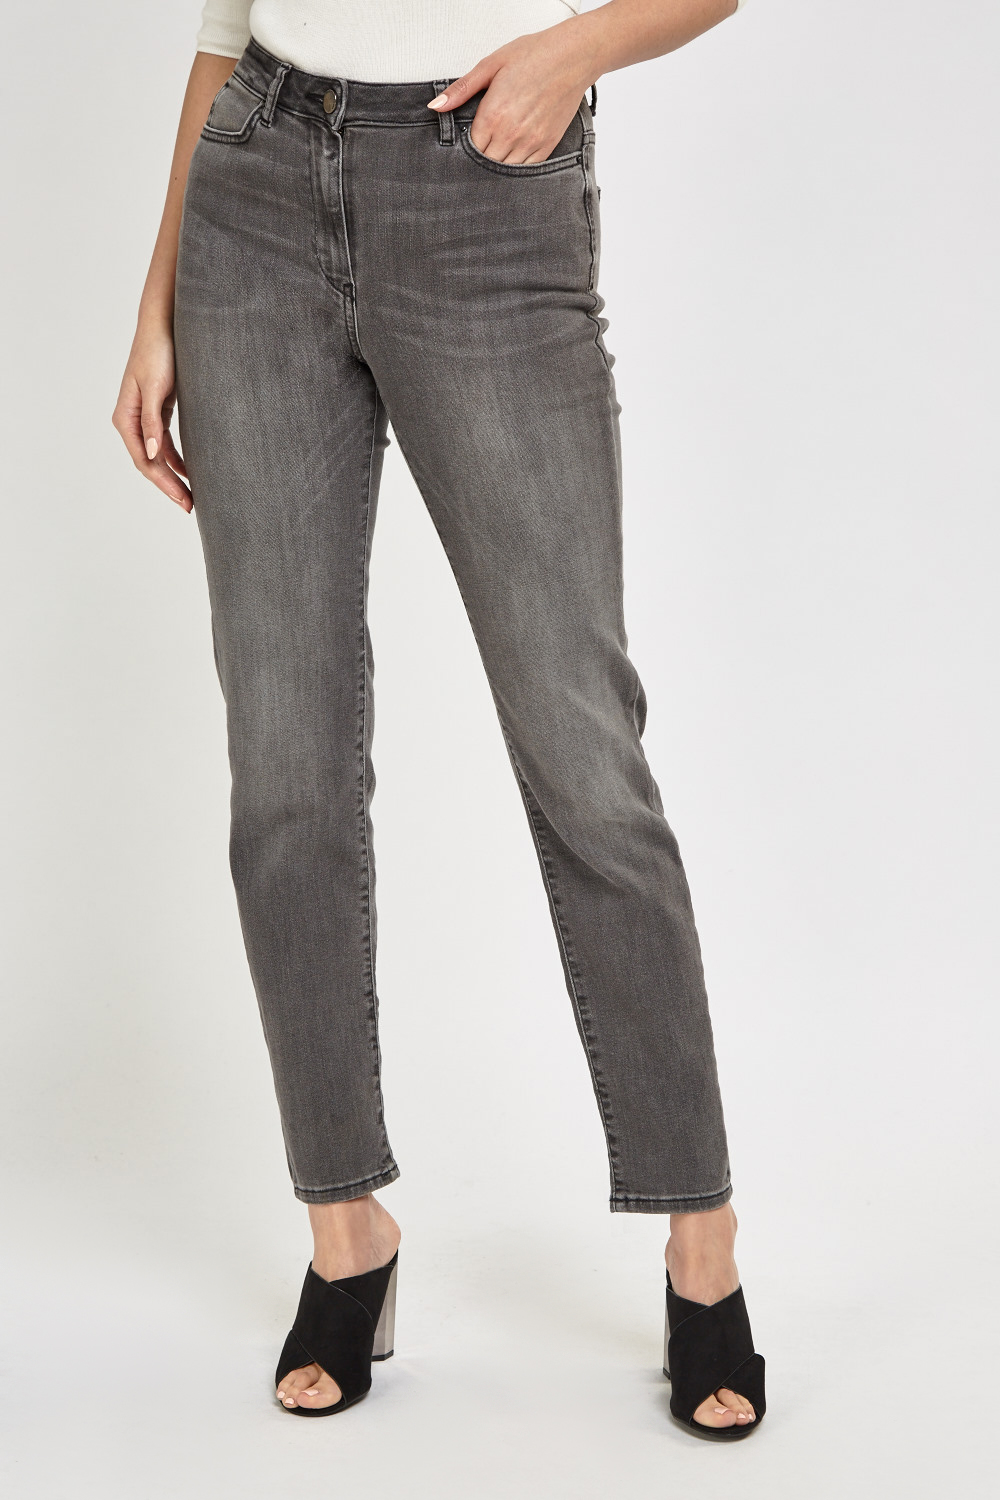 Ash Skinny Denim Jeans - Just $6